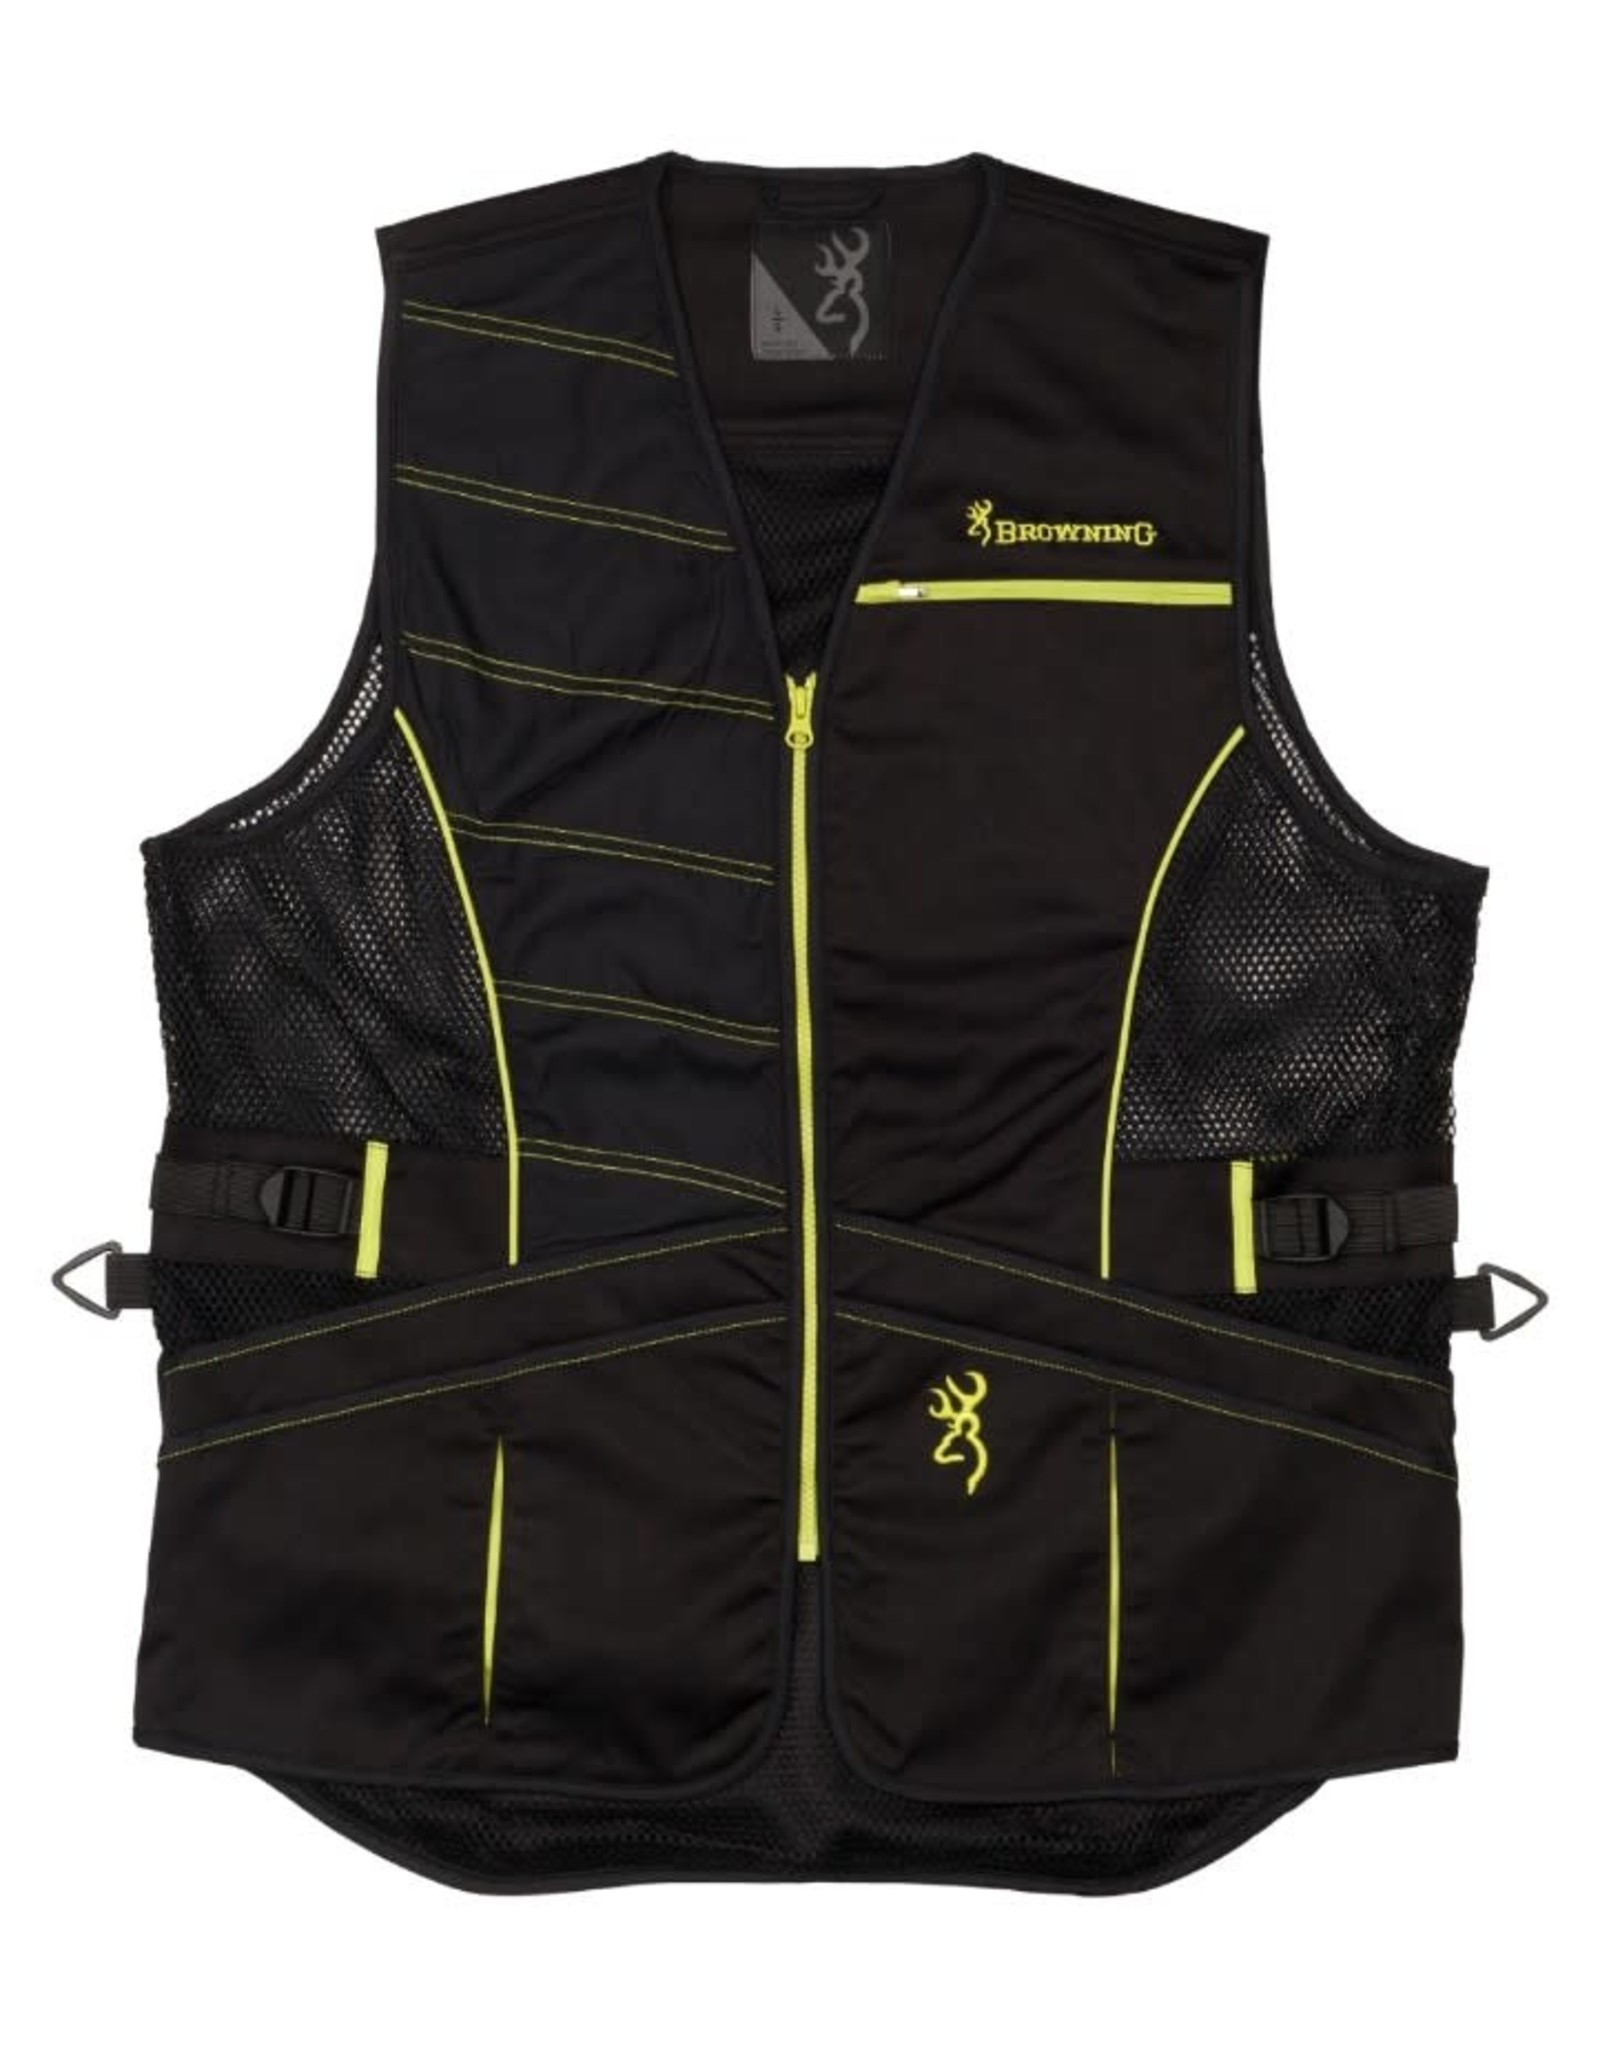 Browning Ace Vest - Black & Volt - XL